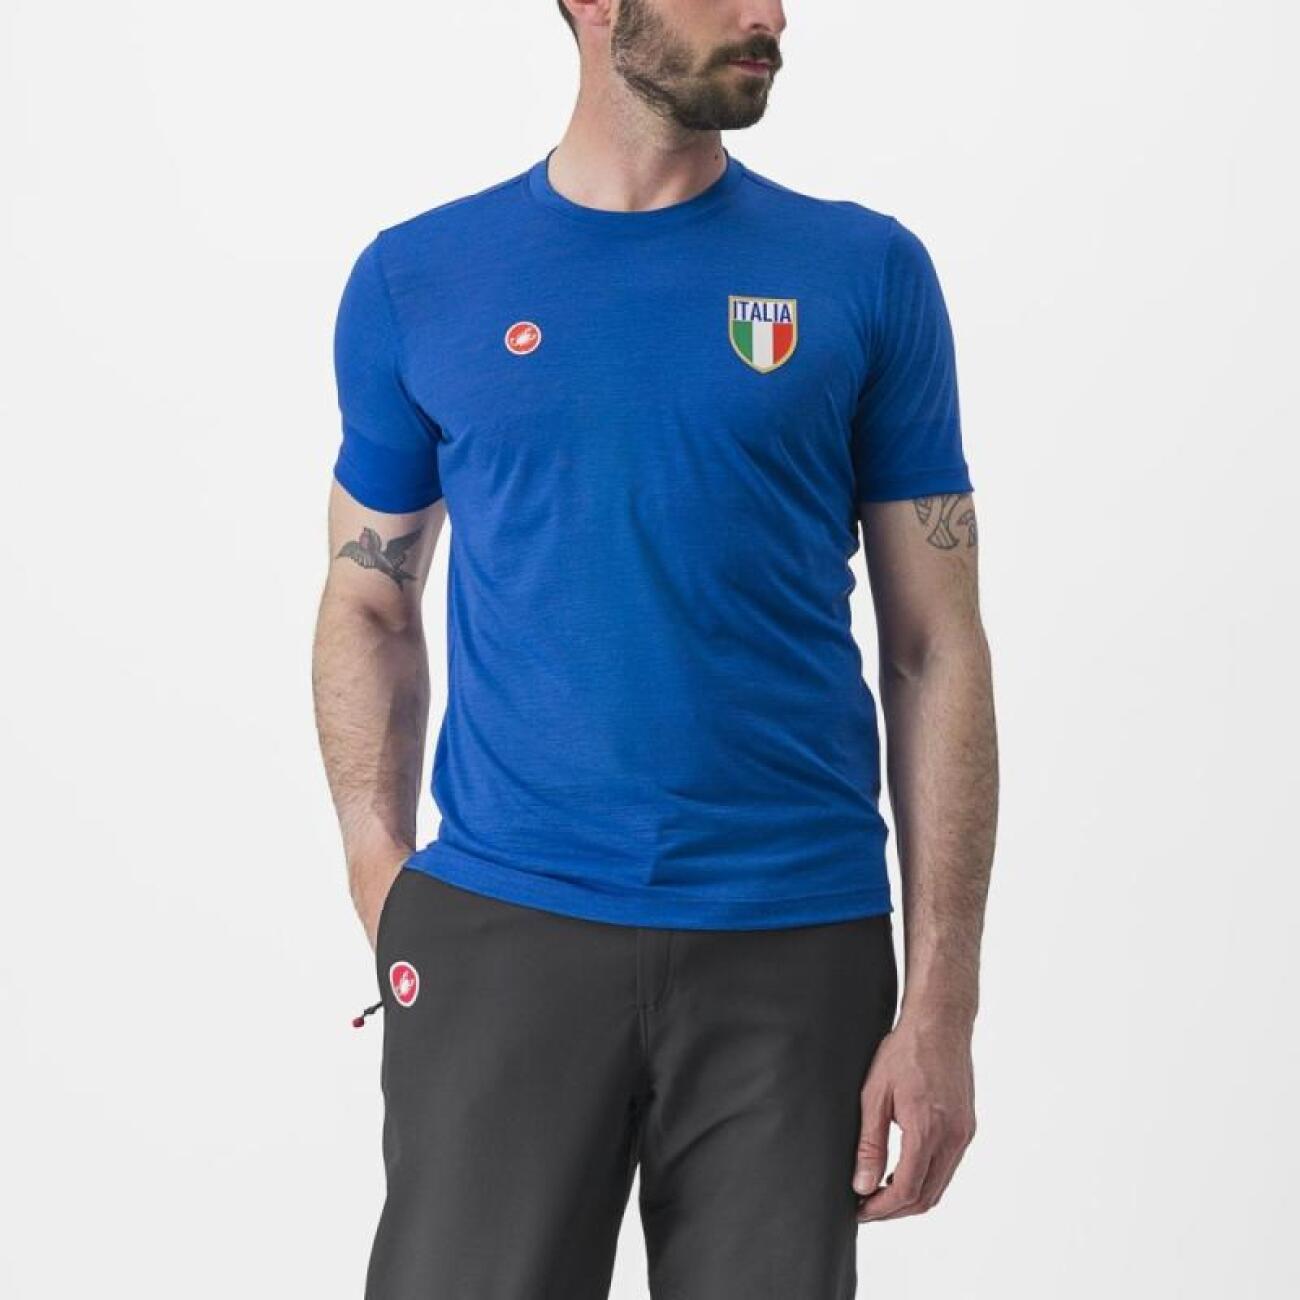 
                CASTELLI Cyklistické triko s krátkým rukávem - ITALIA MERINO - modrá
            